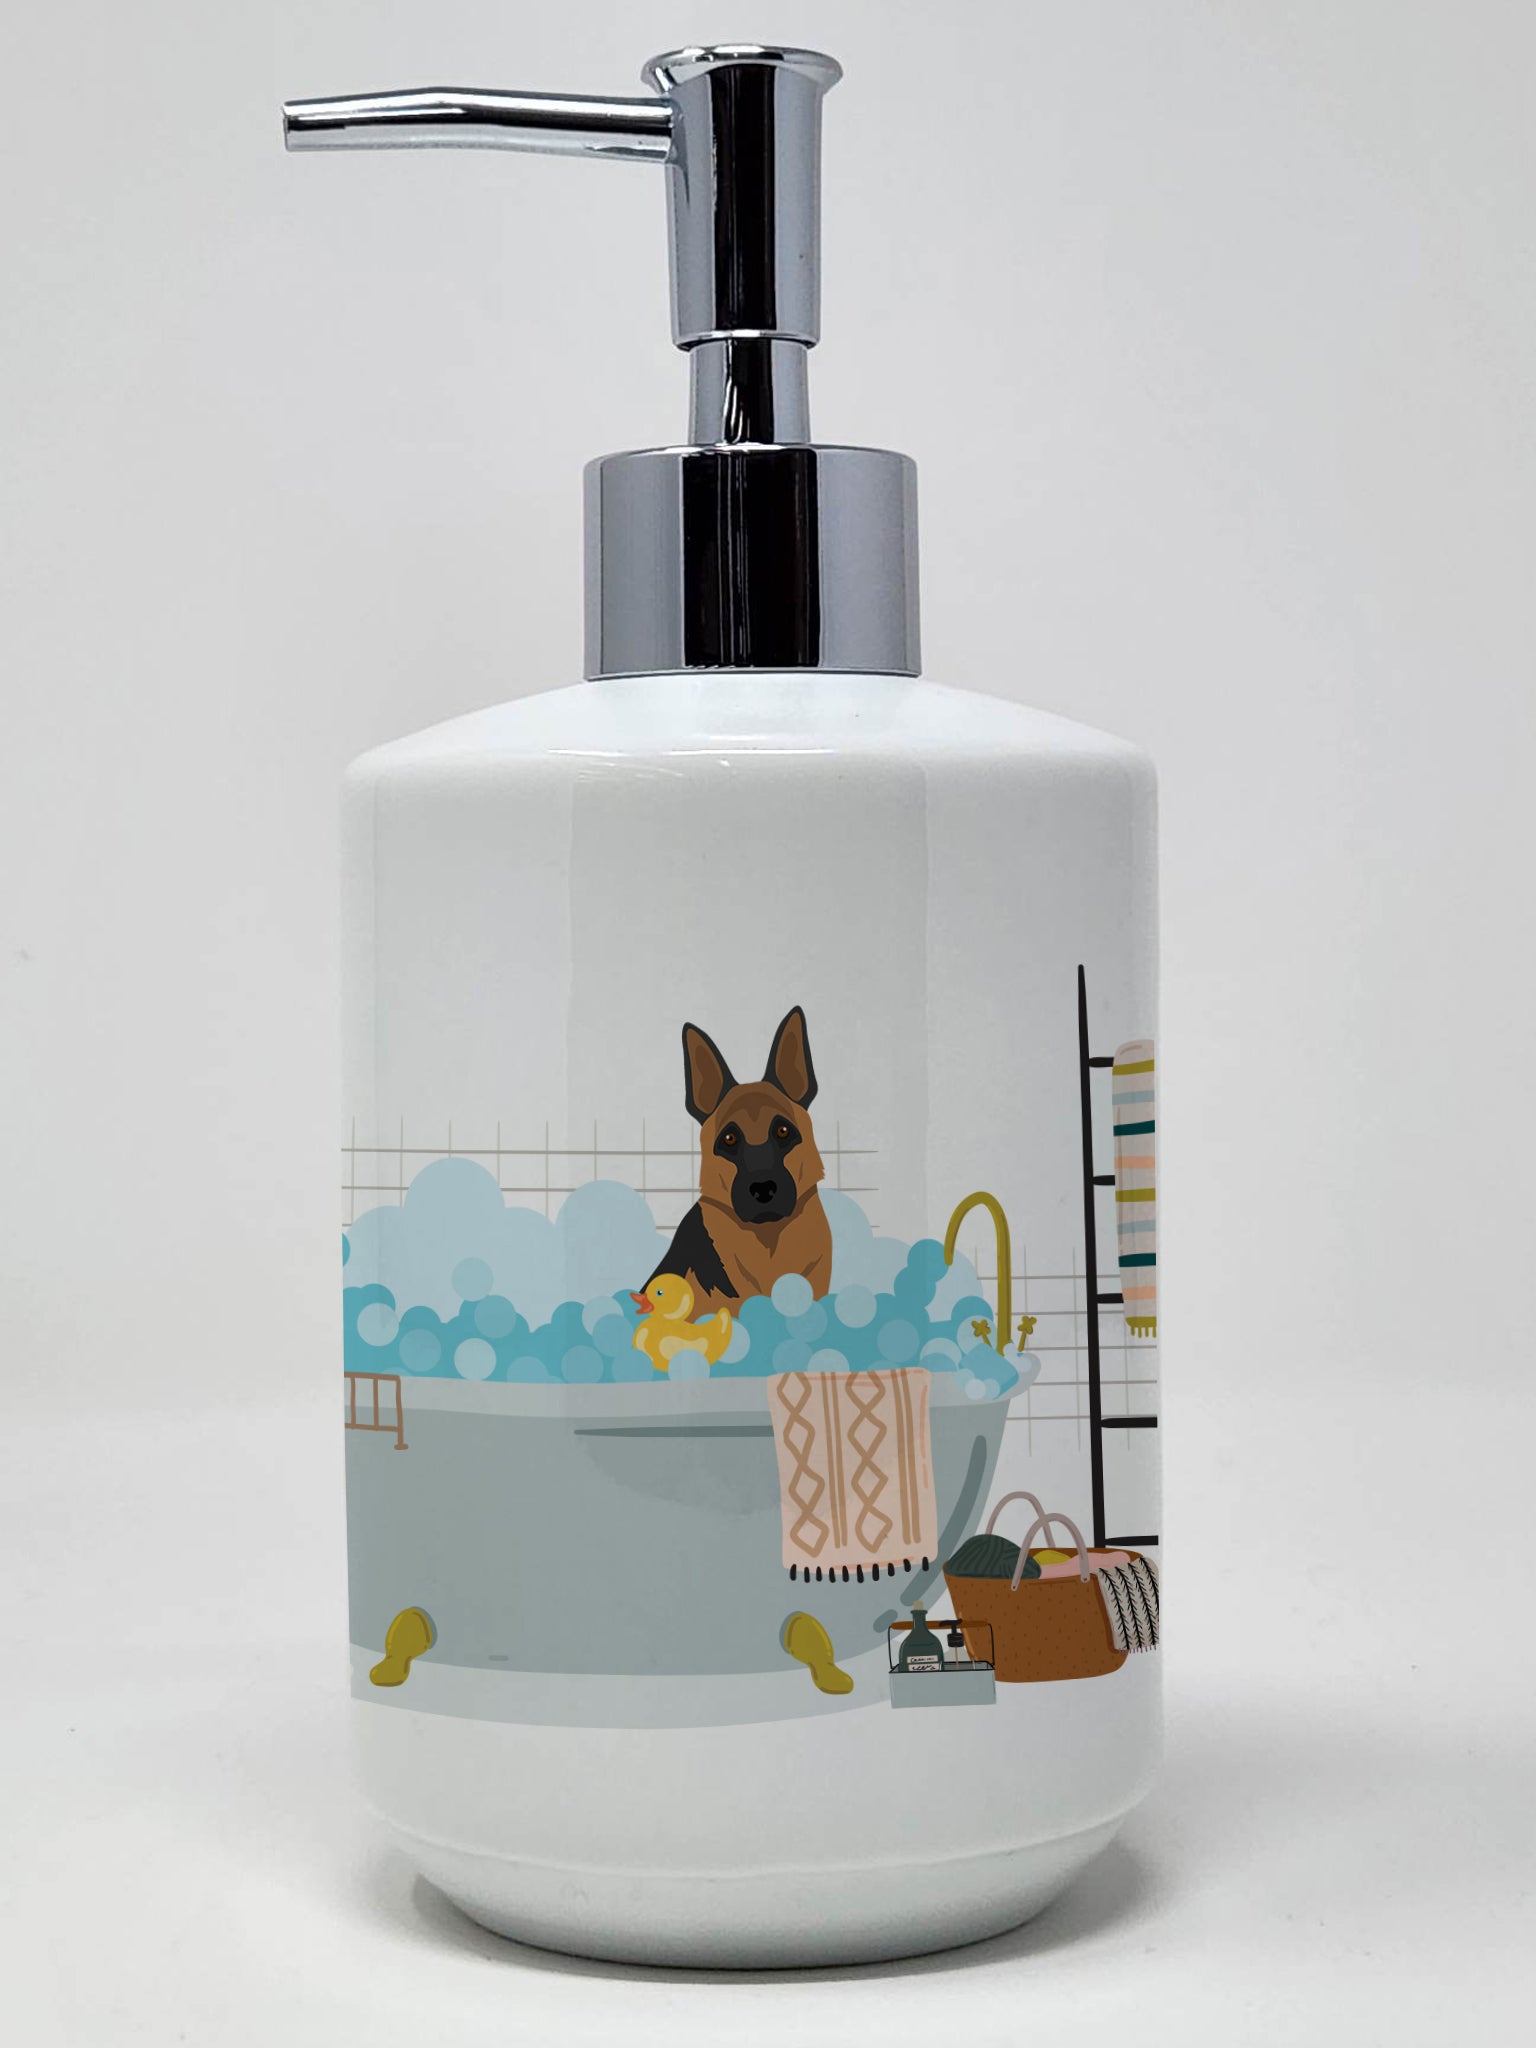 Buy this Black and Tan German Shepherd Ceramic Soap Dispenser